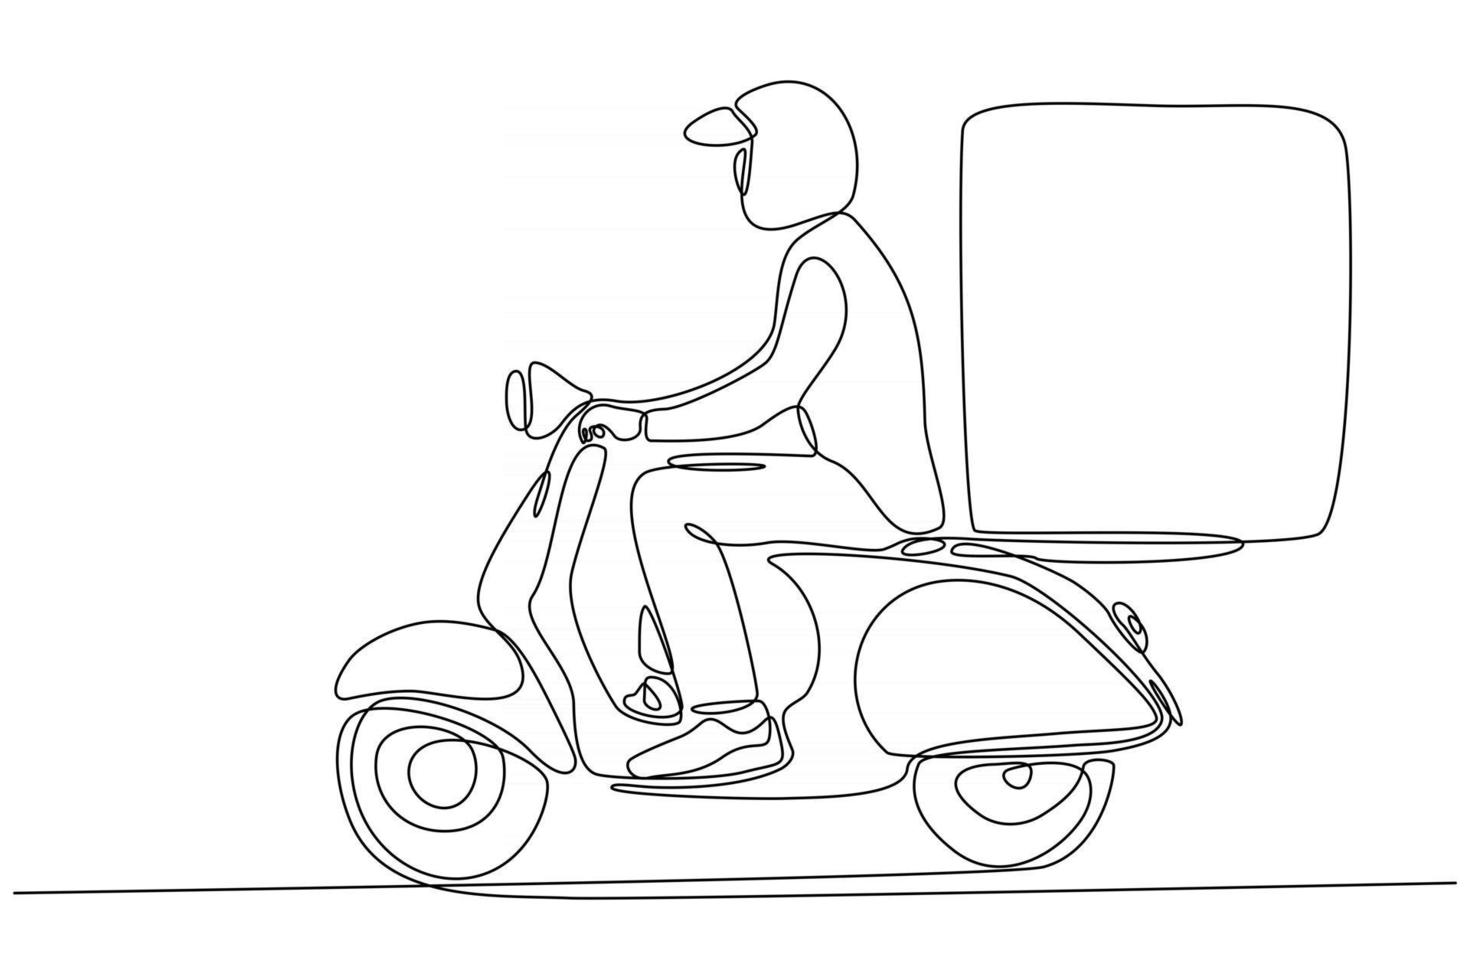 disegno a tratteggio continuo del corriere che consegna gli ordini su illustrazione vettoriale di moto